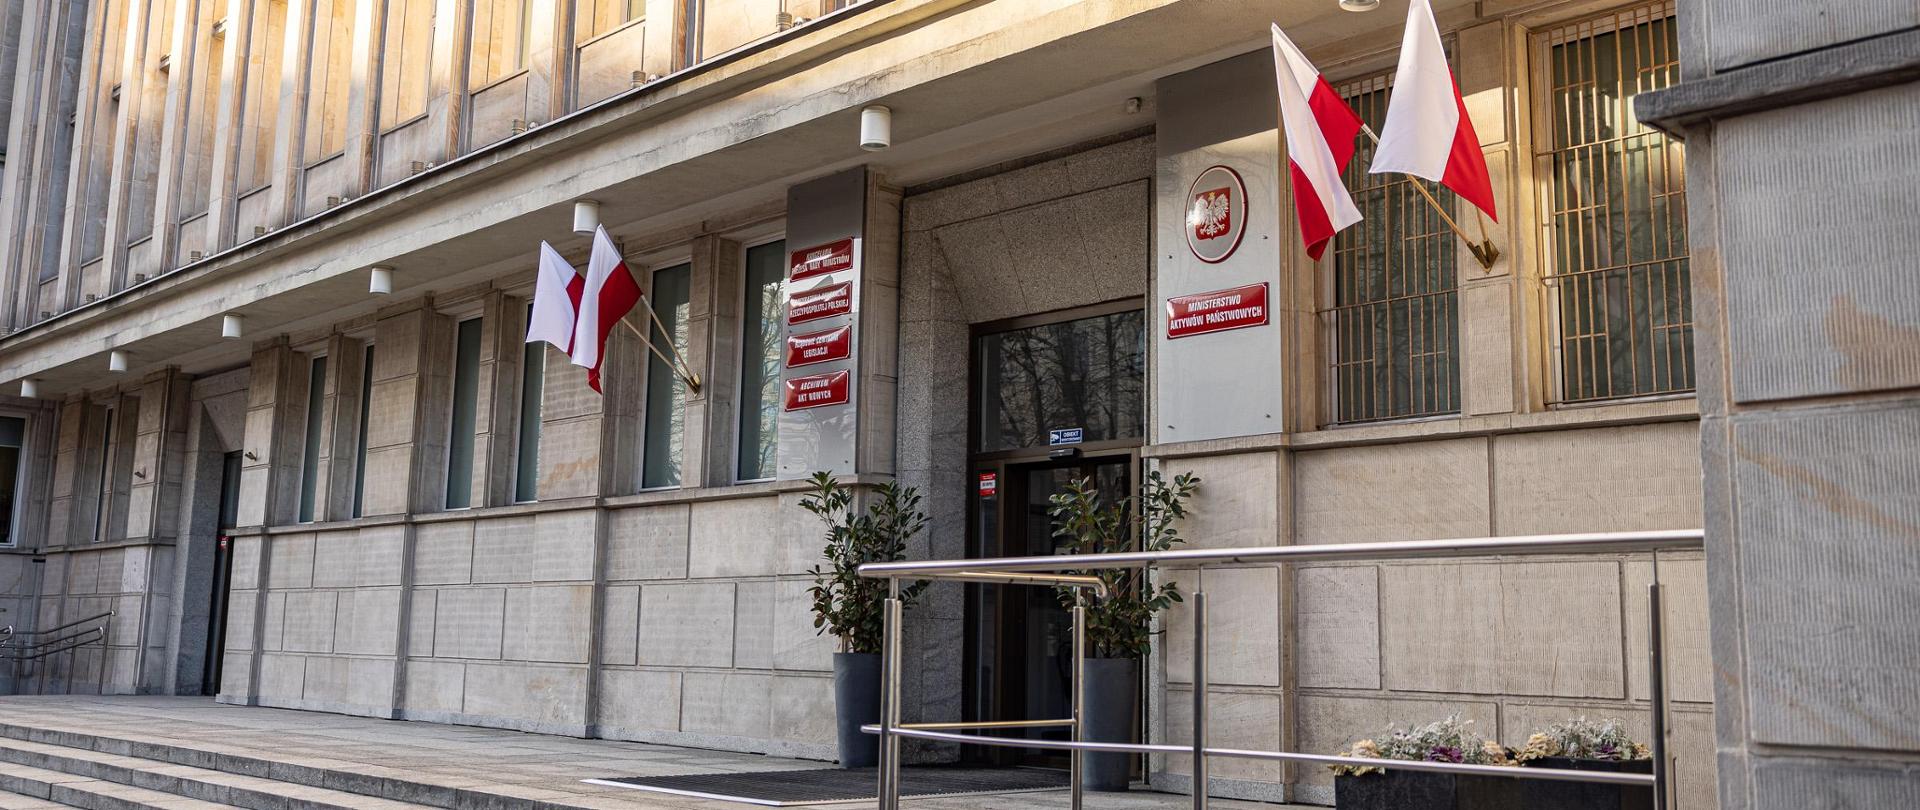 Budynek Ministerstwa Aktywów Państwowych. Na elewacji wiszą tabliczki oraz flagi biało-czerwone. Przed wejściem kwiaty. 